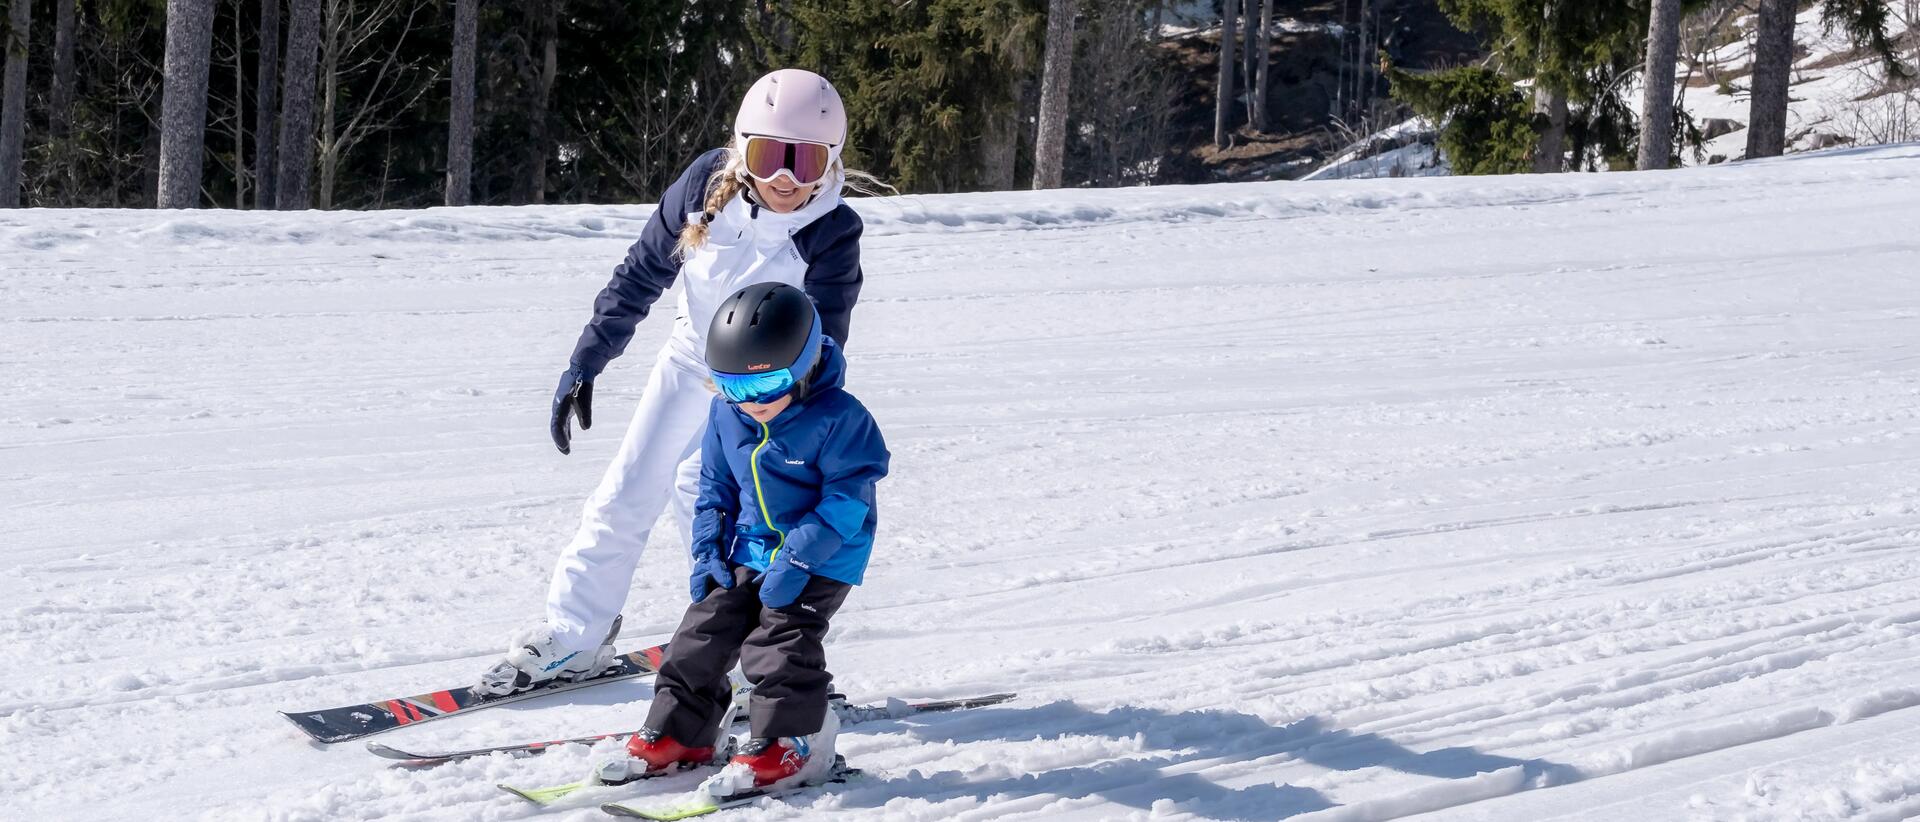 kobieta i dziecko zjeżdżają ze stoku na nartach